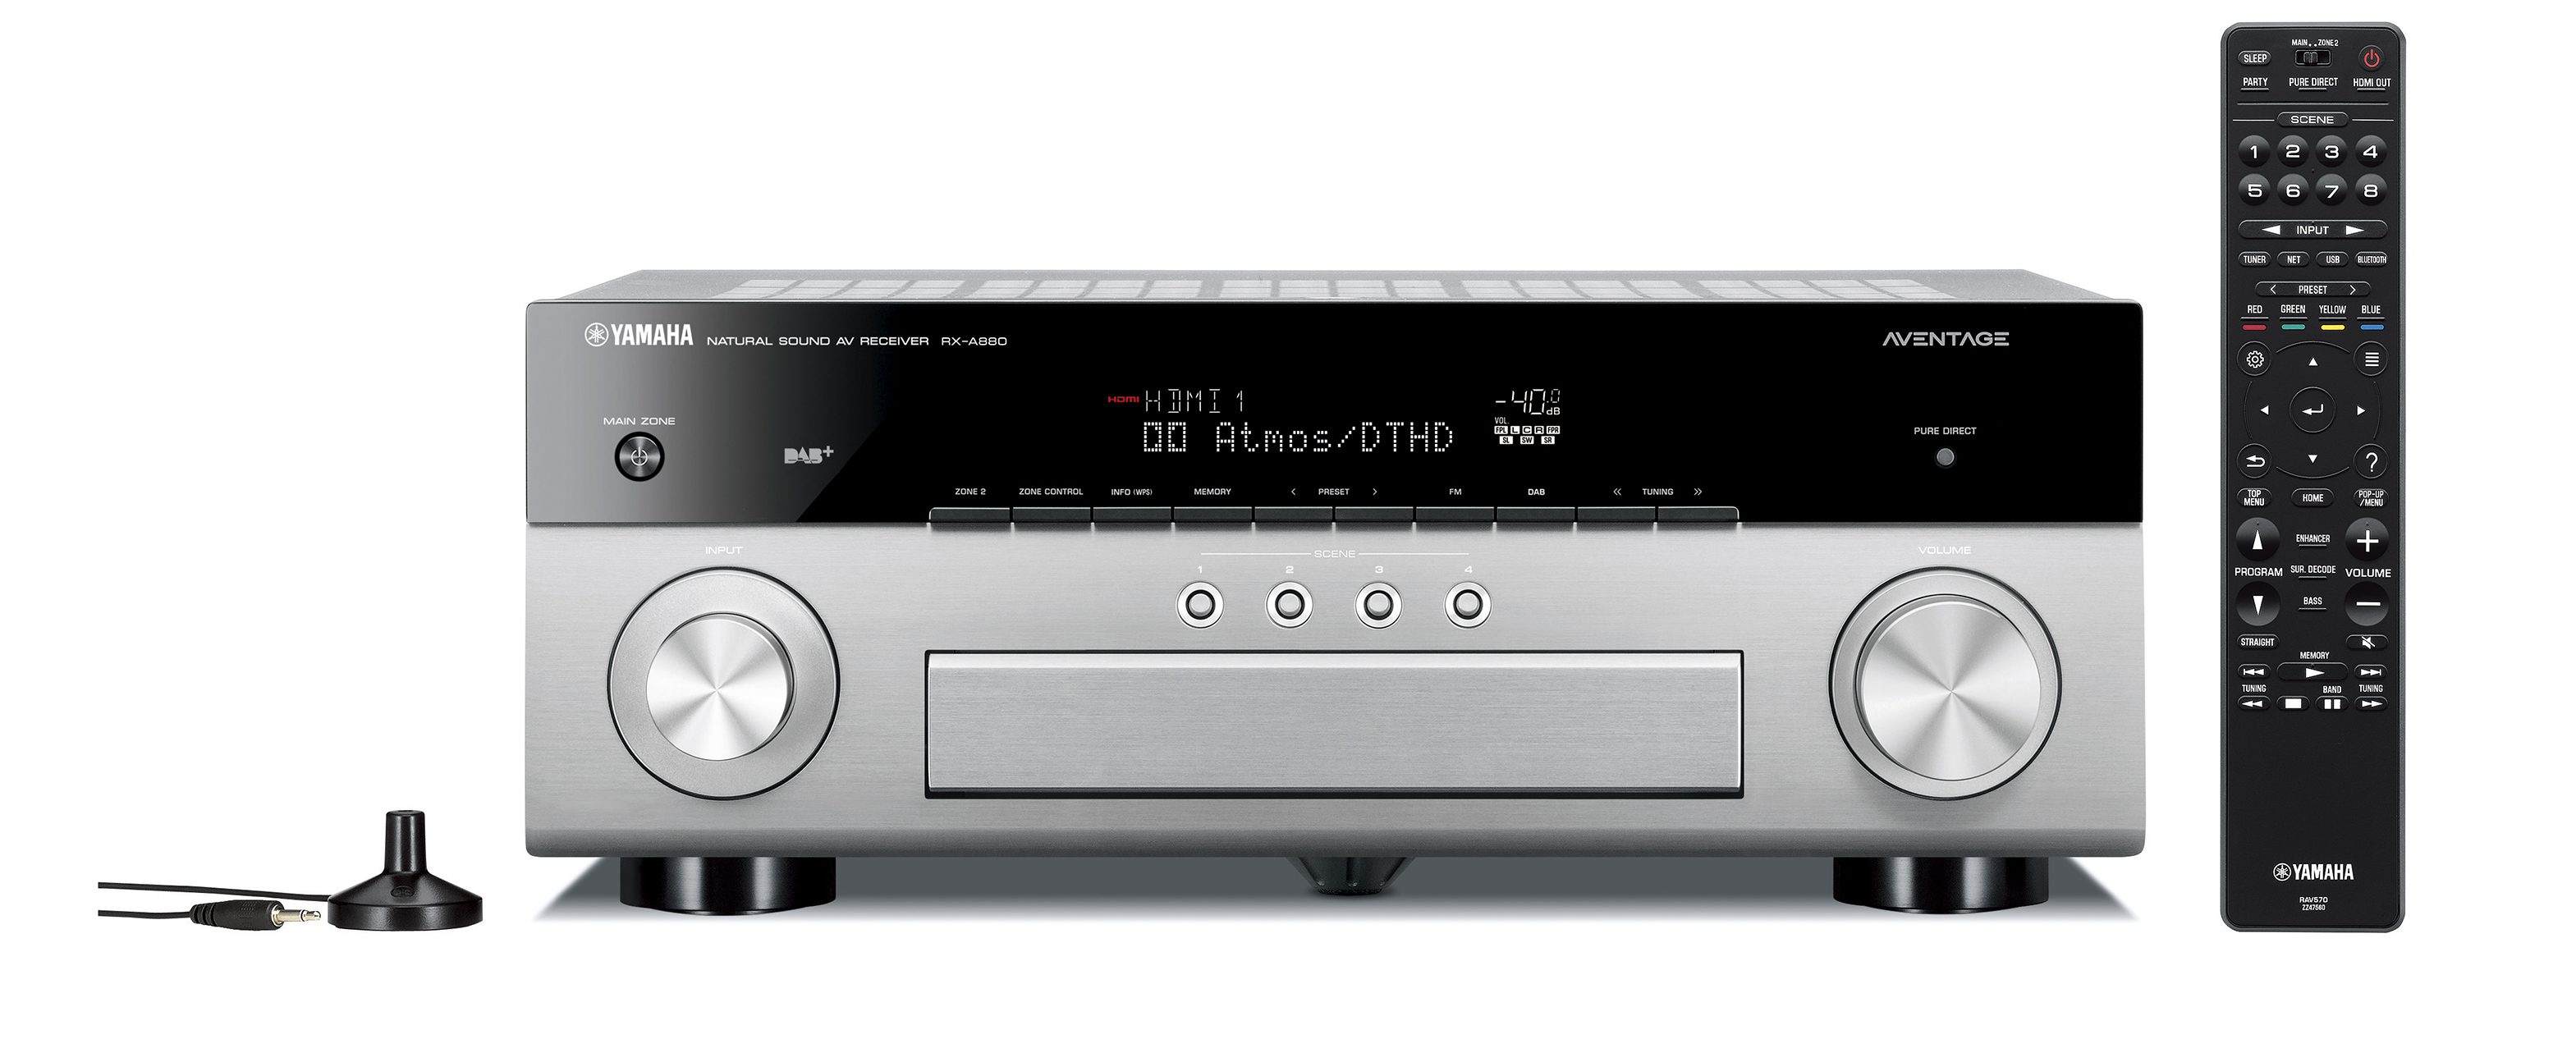 RX-A880 - Descripción - AV Receivers - Audio y Video - Productos